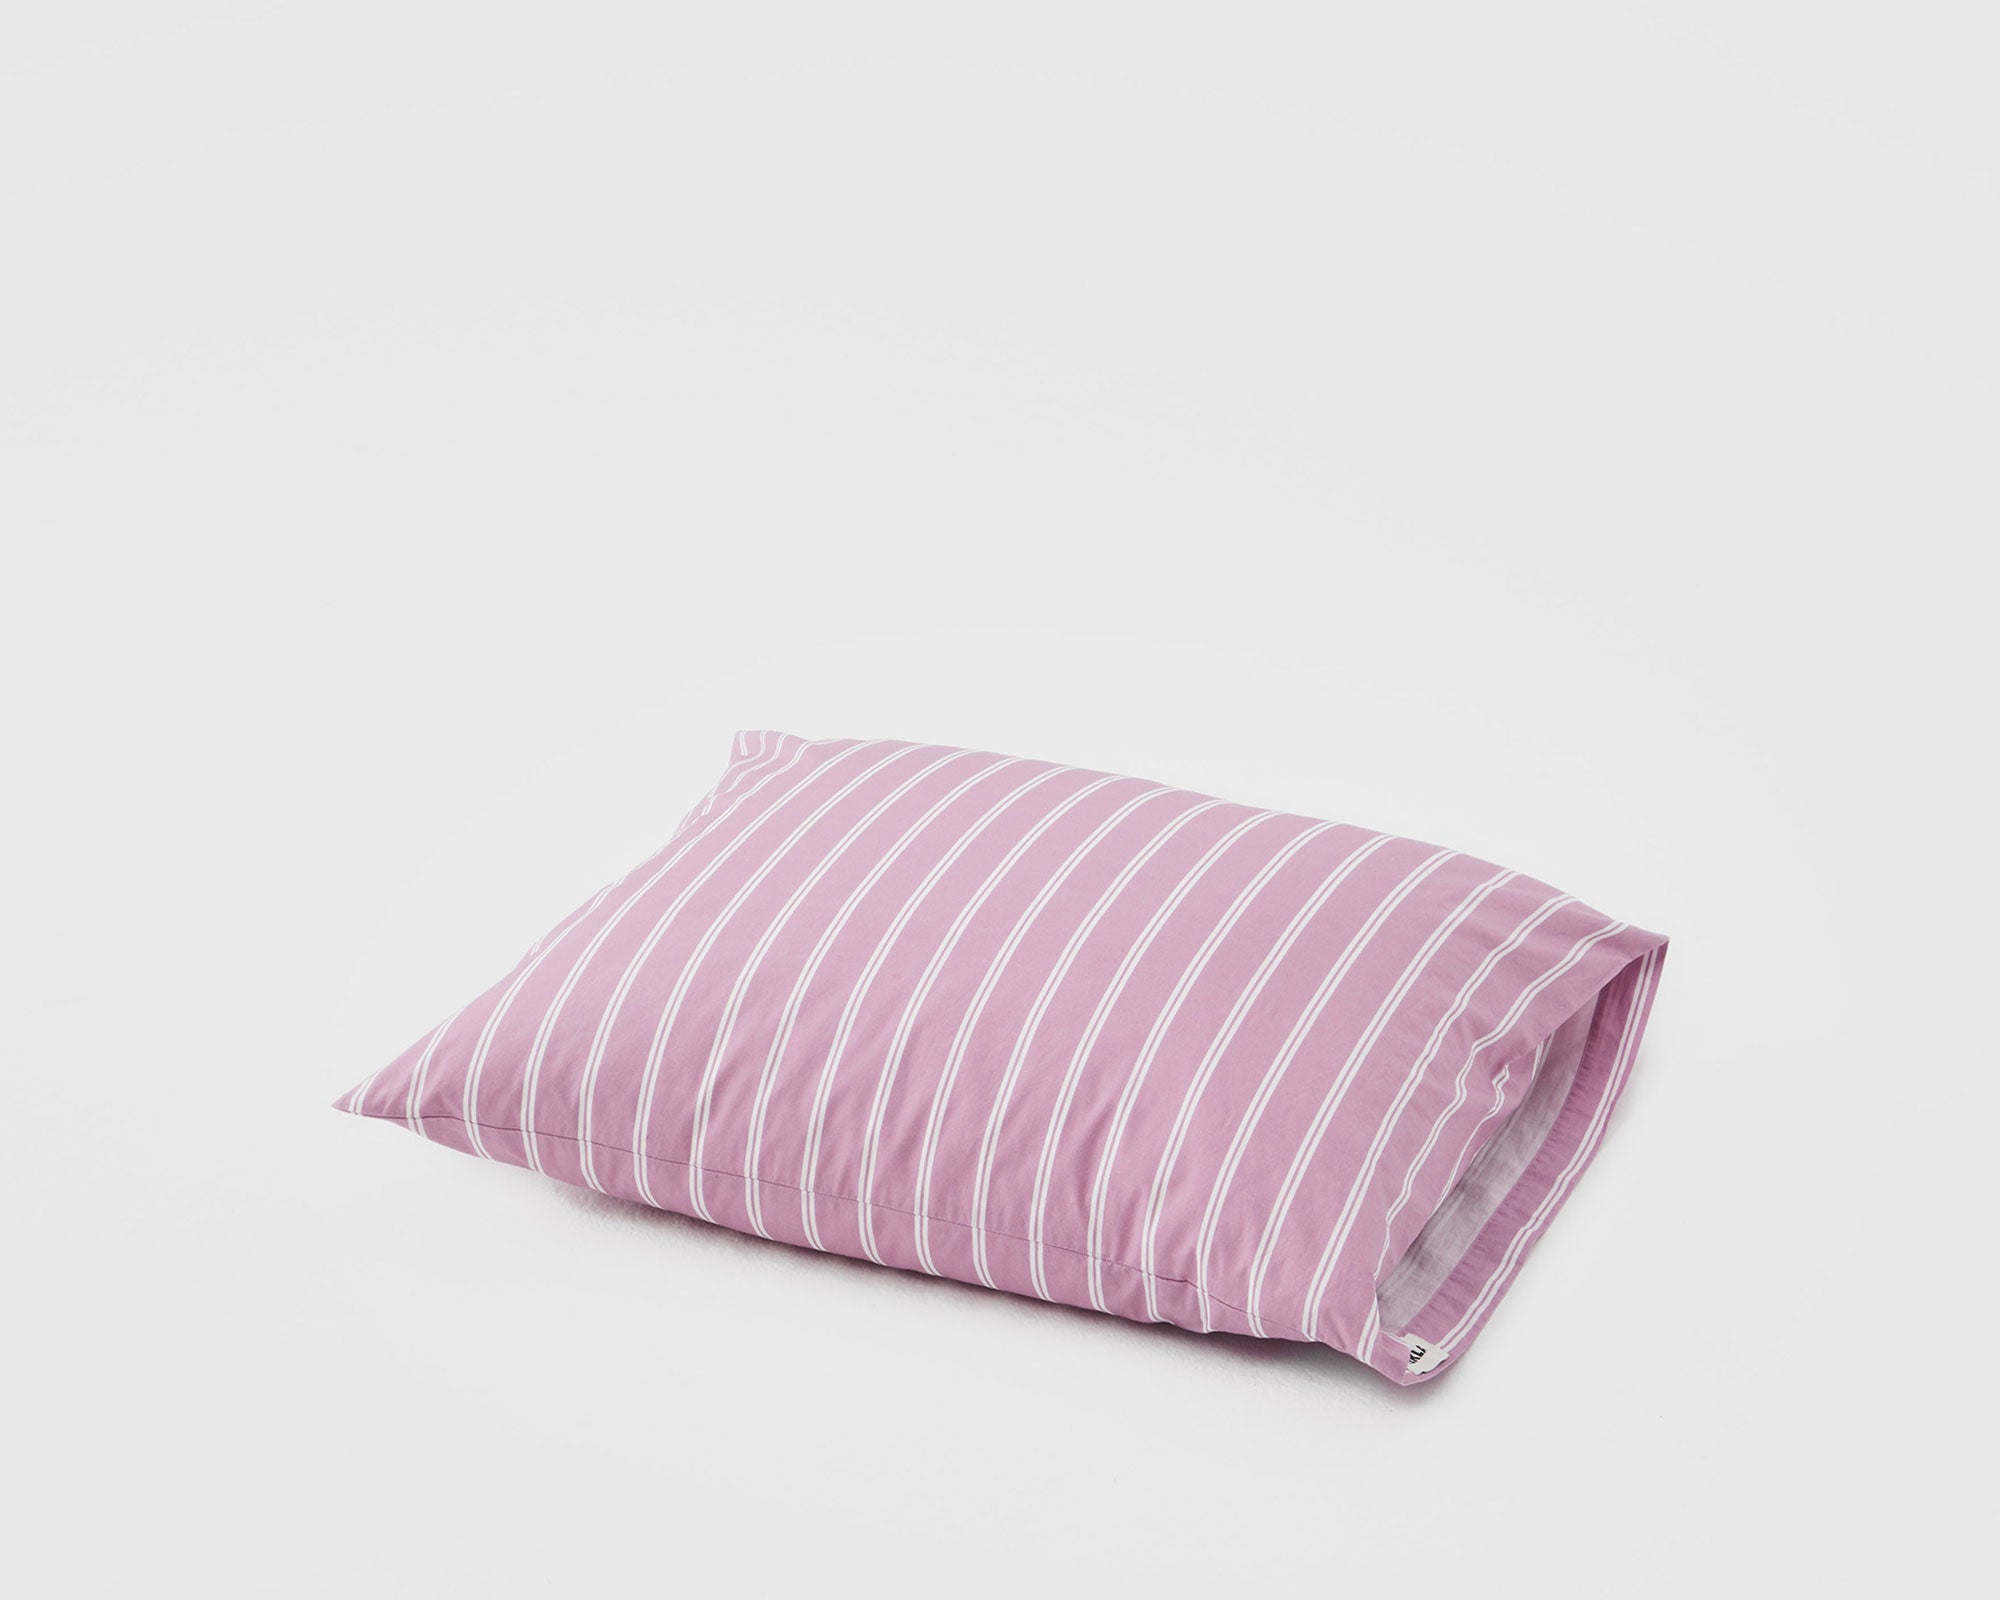 Tekla Cotton Percale Bedding - Mallow Pink Stripes